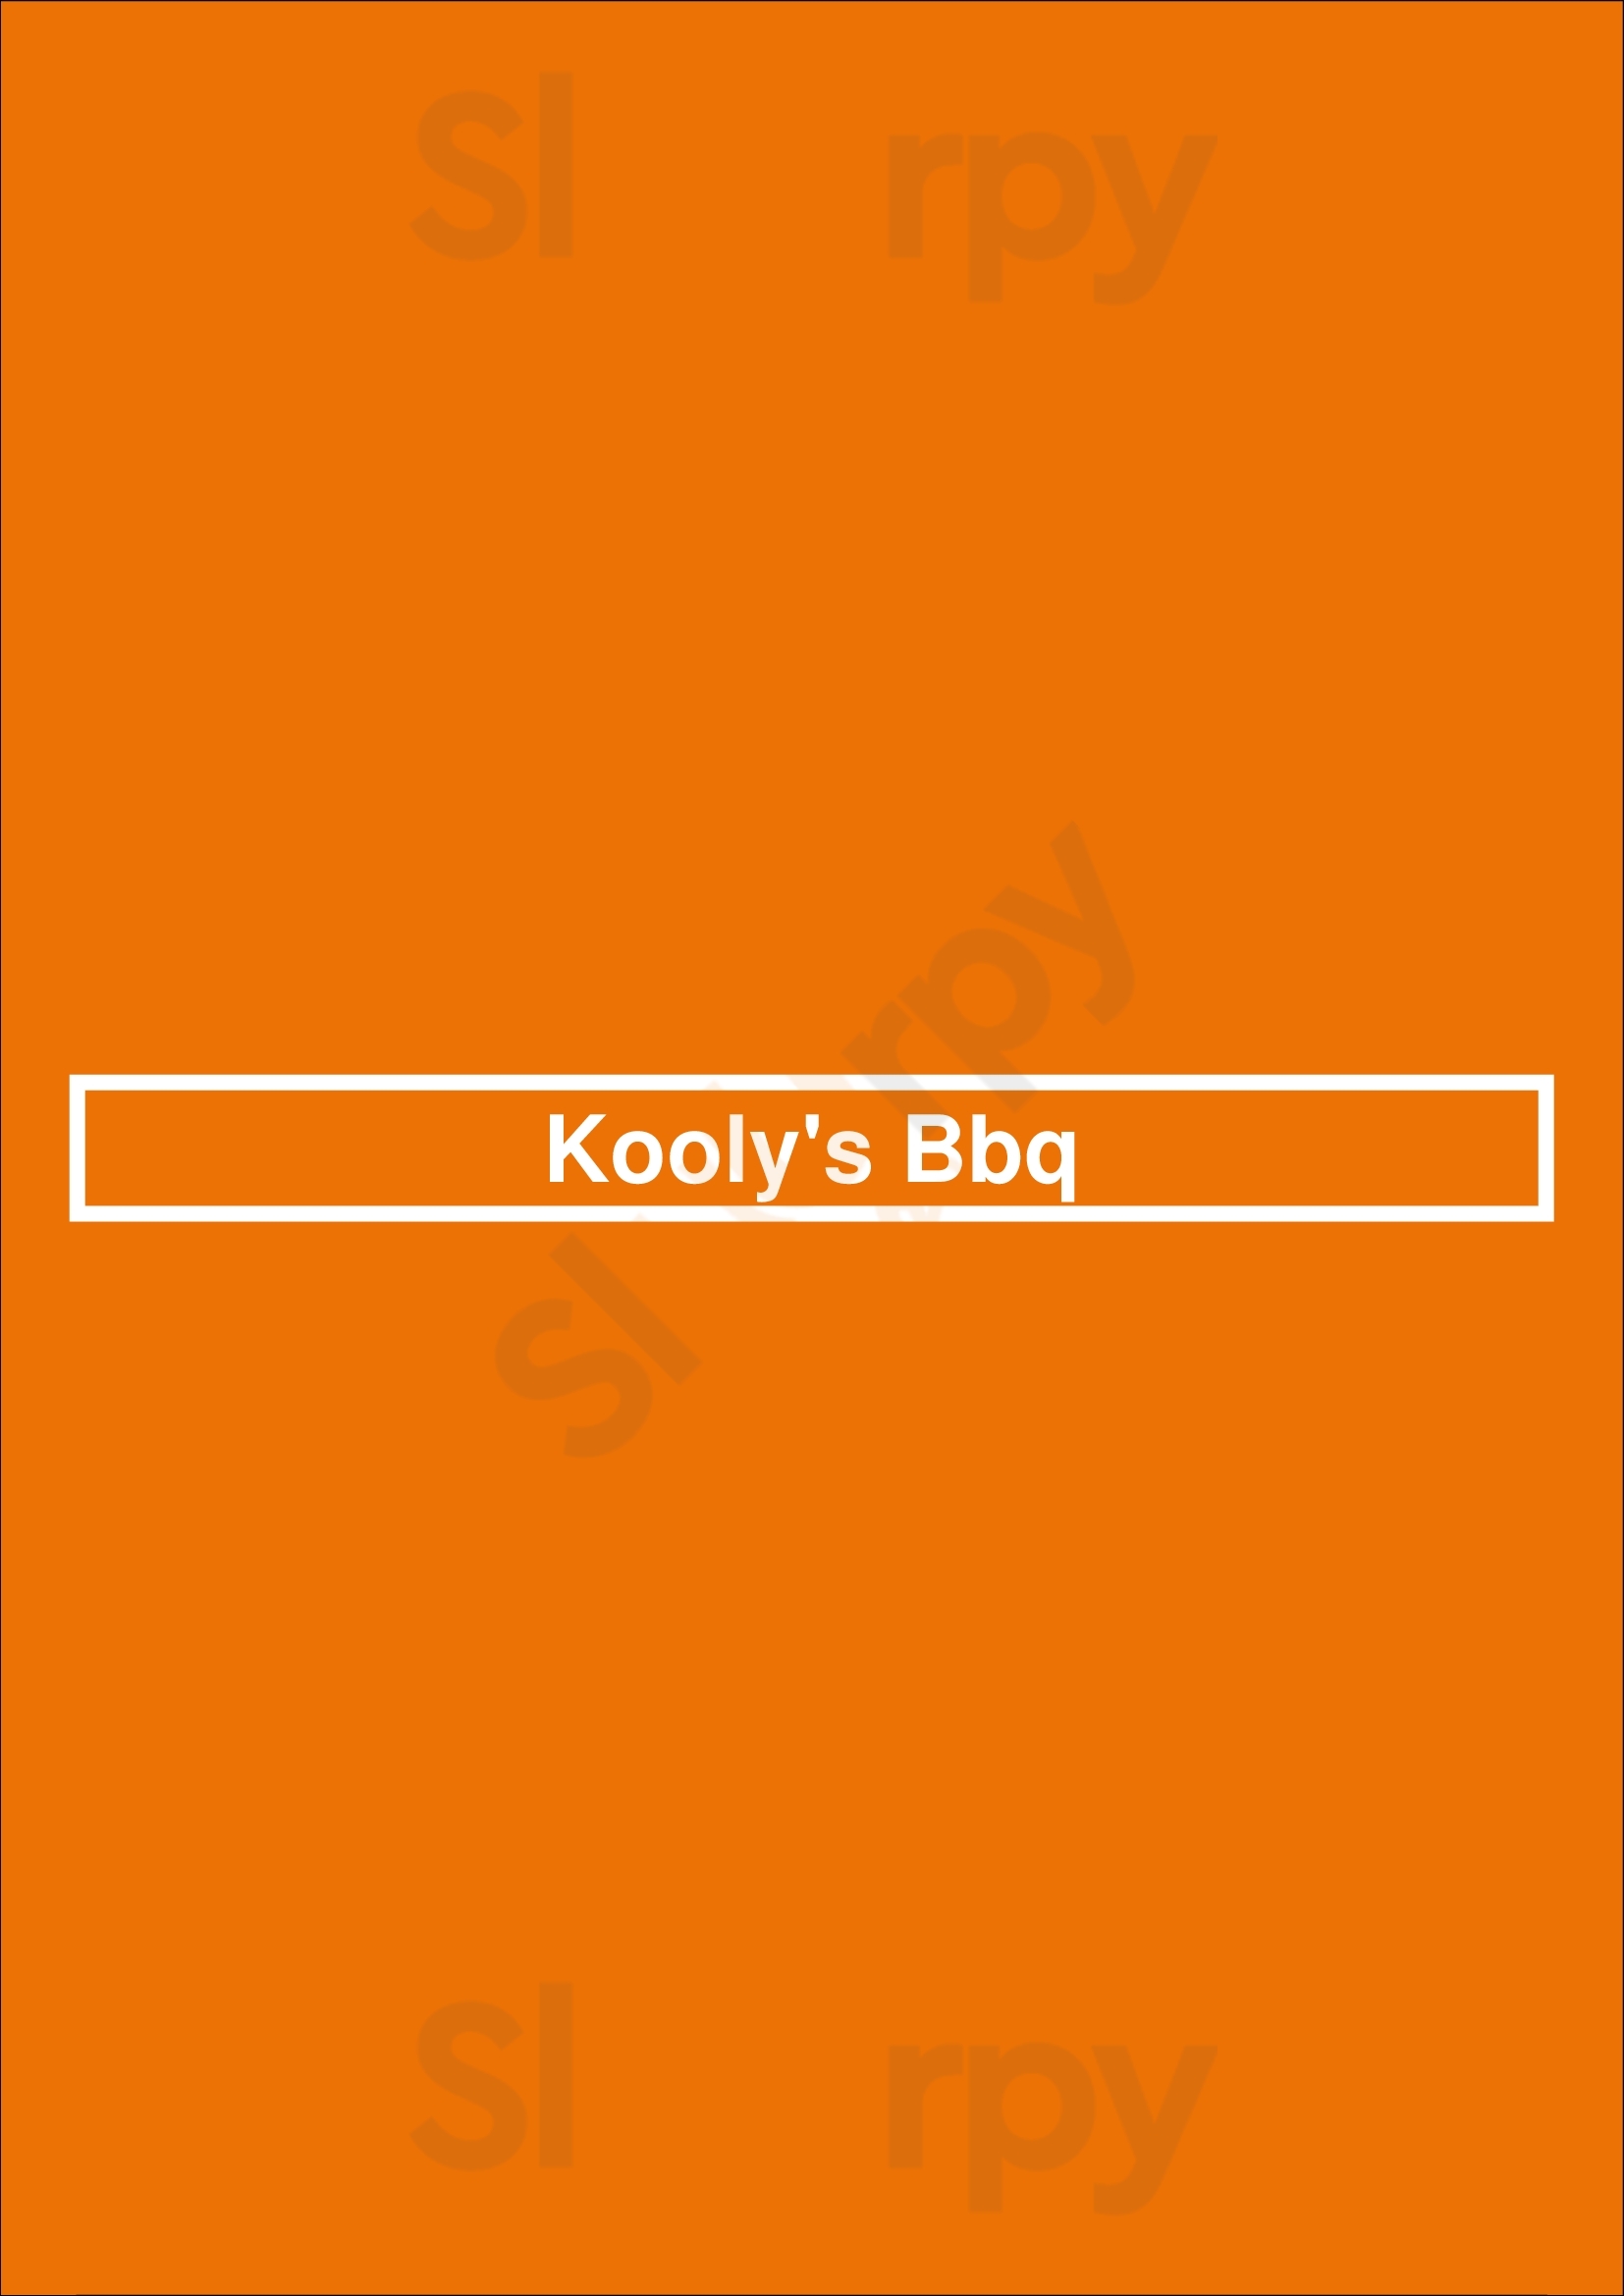 Kooly's Bbq Dallas Menu - 1